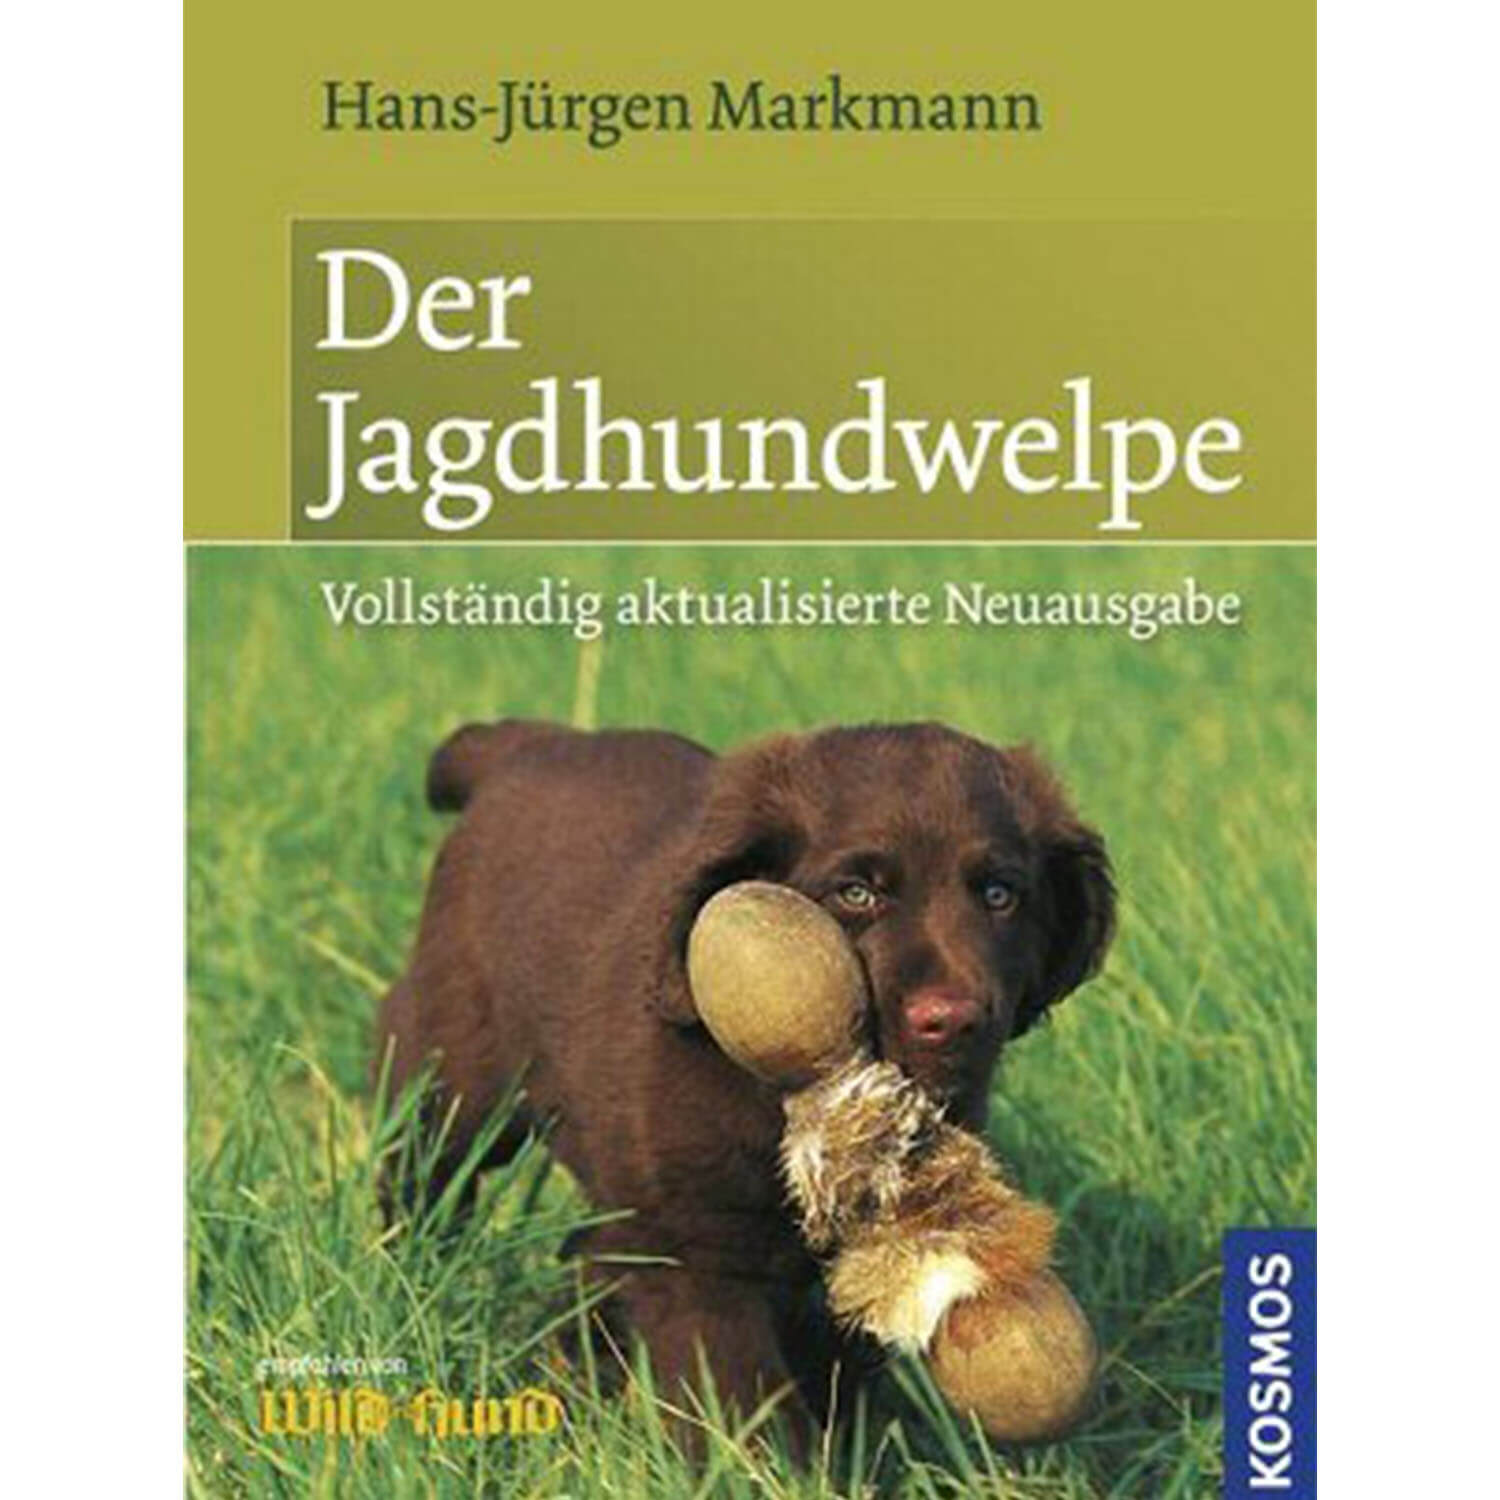 Der Jagdhundewelpe - Buch - Markmann - Jagdbücher